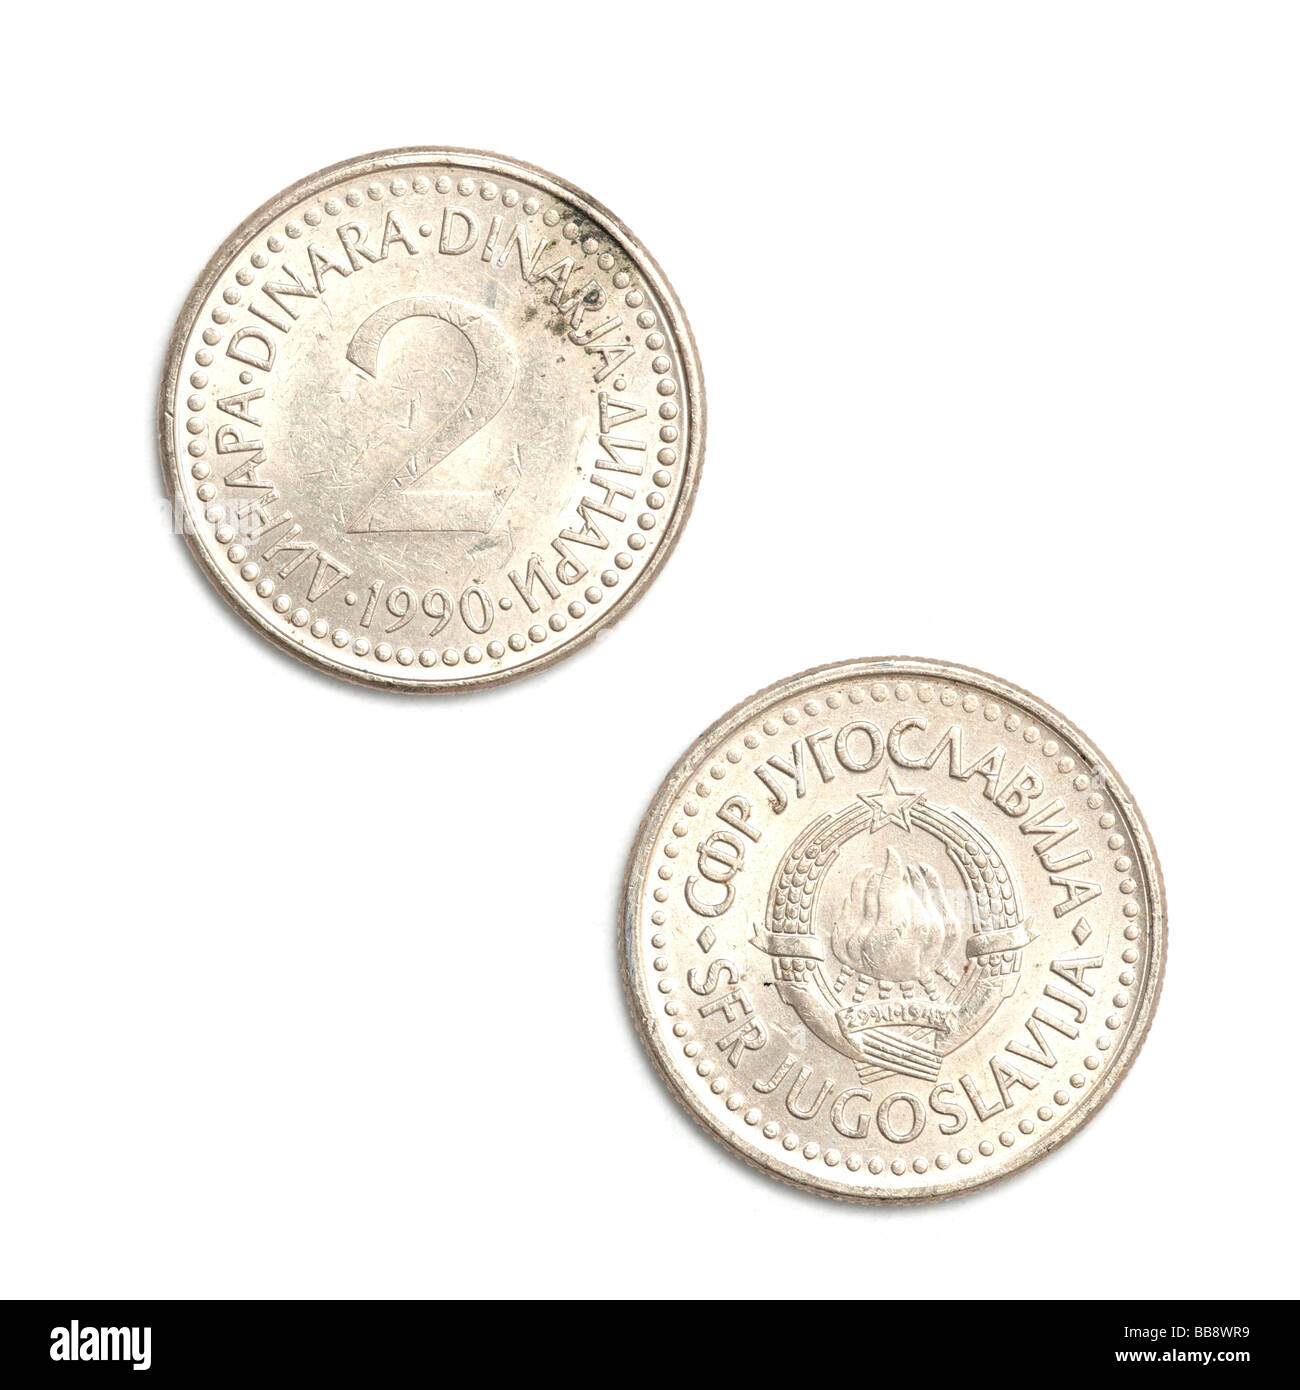 Yugoslavian 2 dinar coin Stock Photo